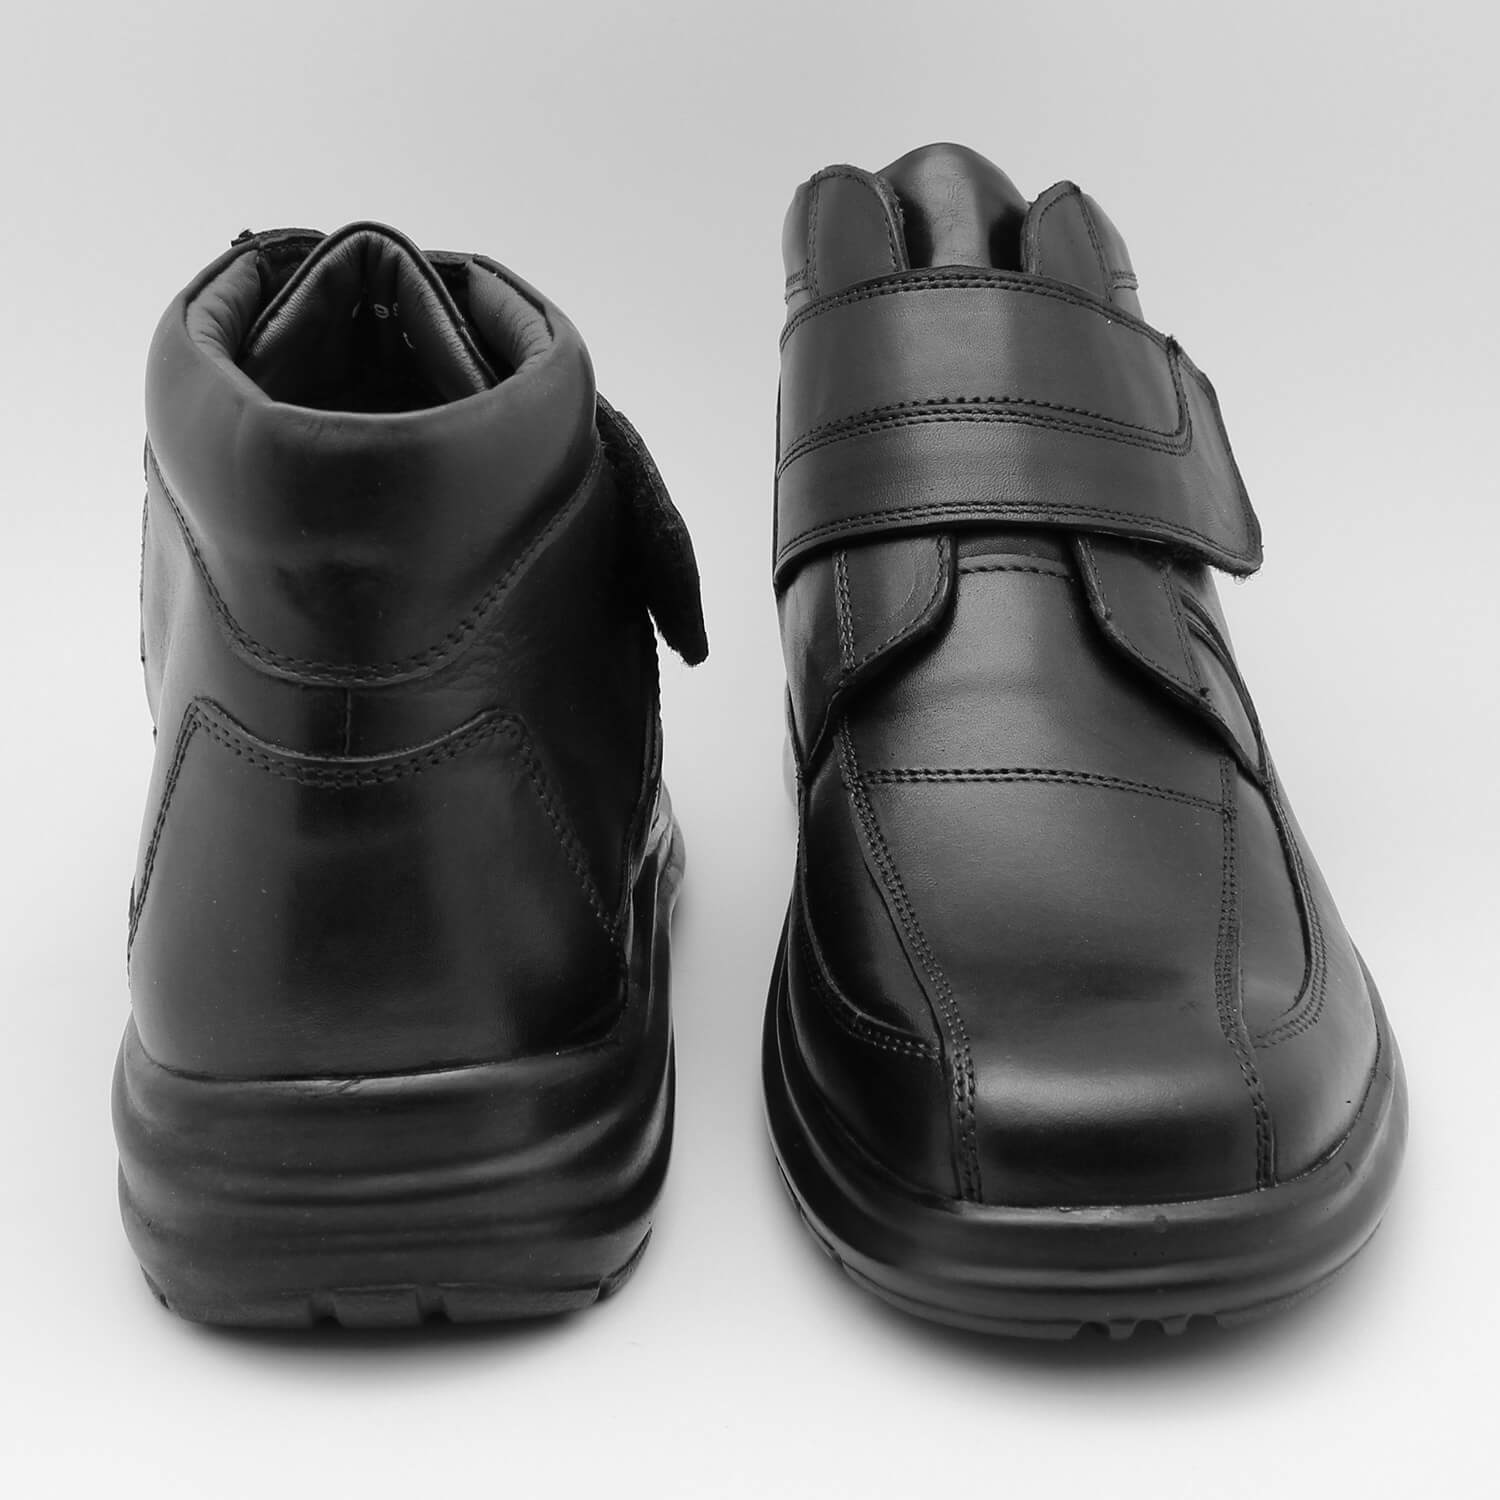 Ботинки большой полноты. Ортопедические мужские ботинки Nimco. Белорусская обувь модель 3243 ботинки на липучках. Air Fly Comfort ортопедические ботинки. Bally ботинки мужские на липучке.